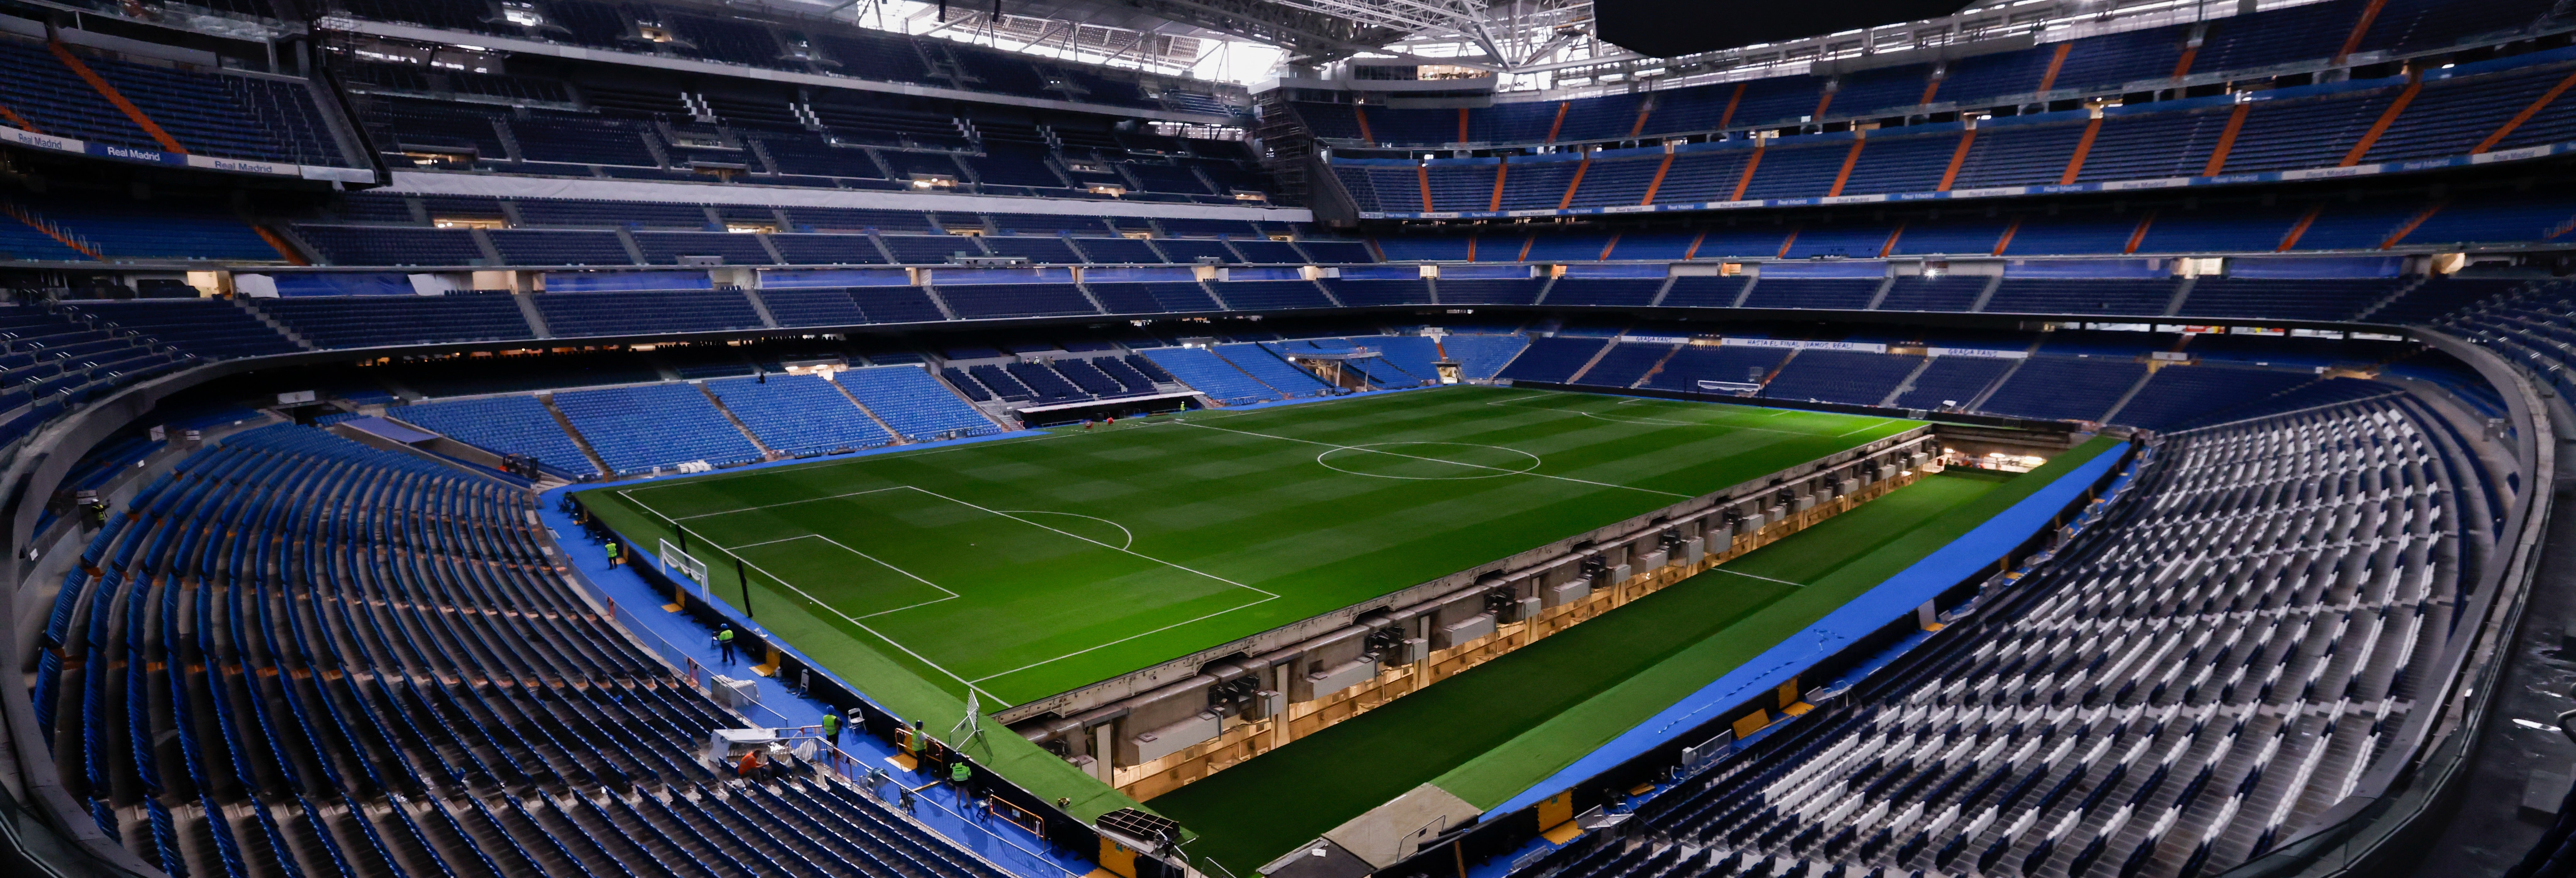 Tickets & Tours - Santiago Bernabéu Stadium (Estadio Santiago Bernabéu),  Madrid - Viator